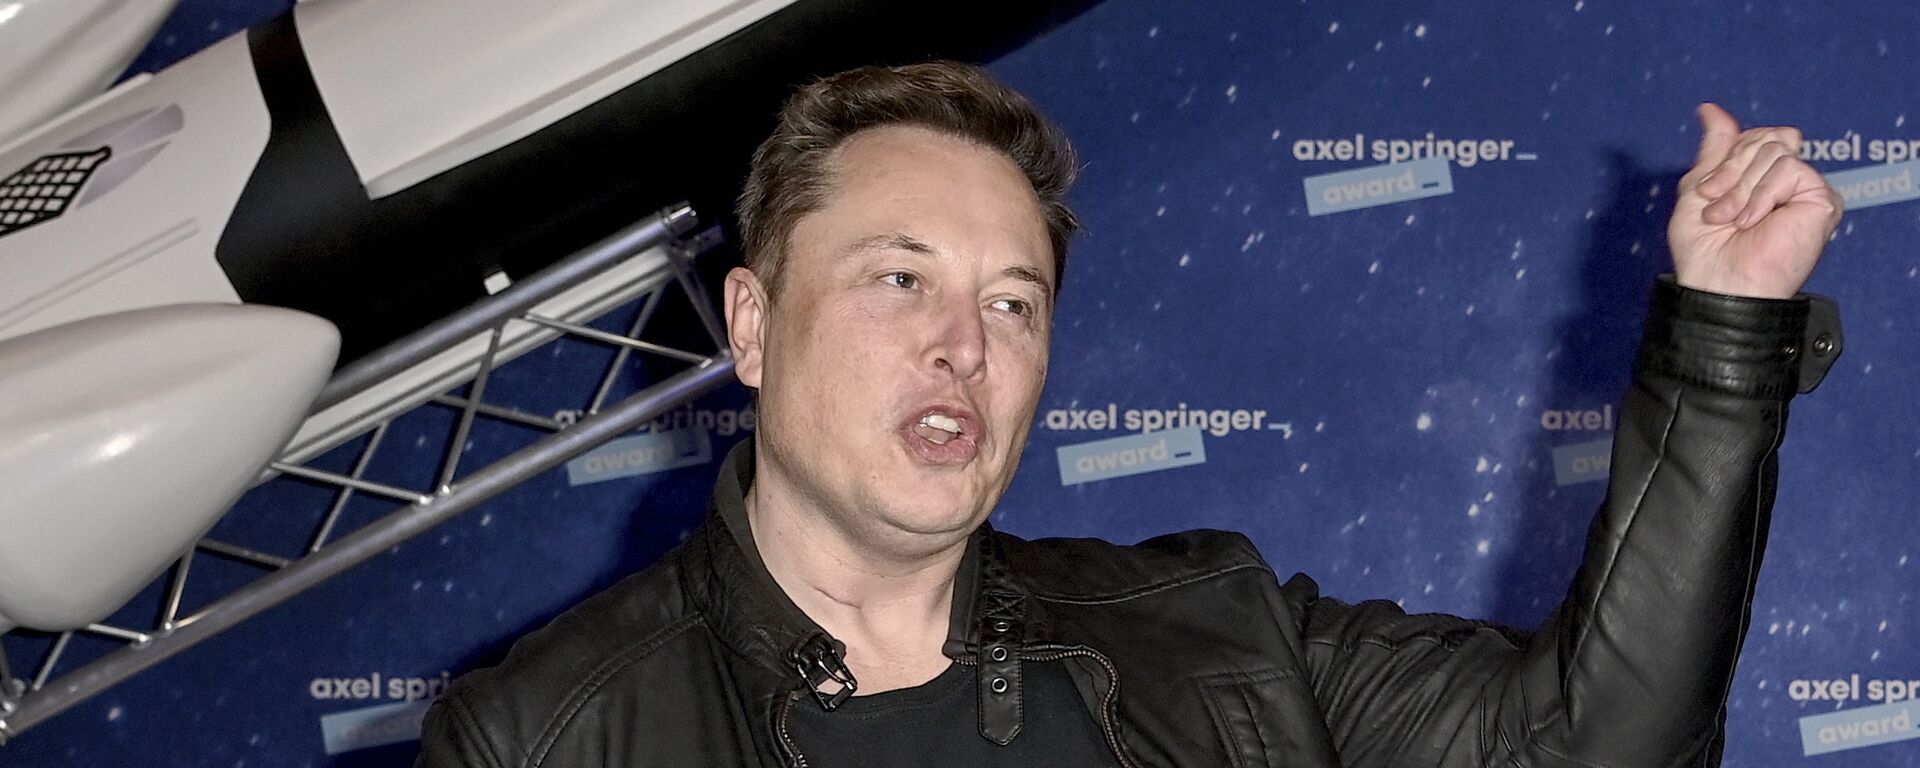 Proprietário da SpaceX e CEO da Tesla, Elon Musk chega ao tapete vermelho para o prêmio de mídia Axel Springer, em Berlim, em 1º de dezembro de 2020 - Sputnik Brasil, 1920, 25.04.2021